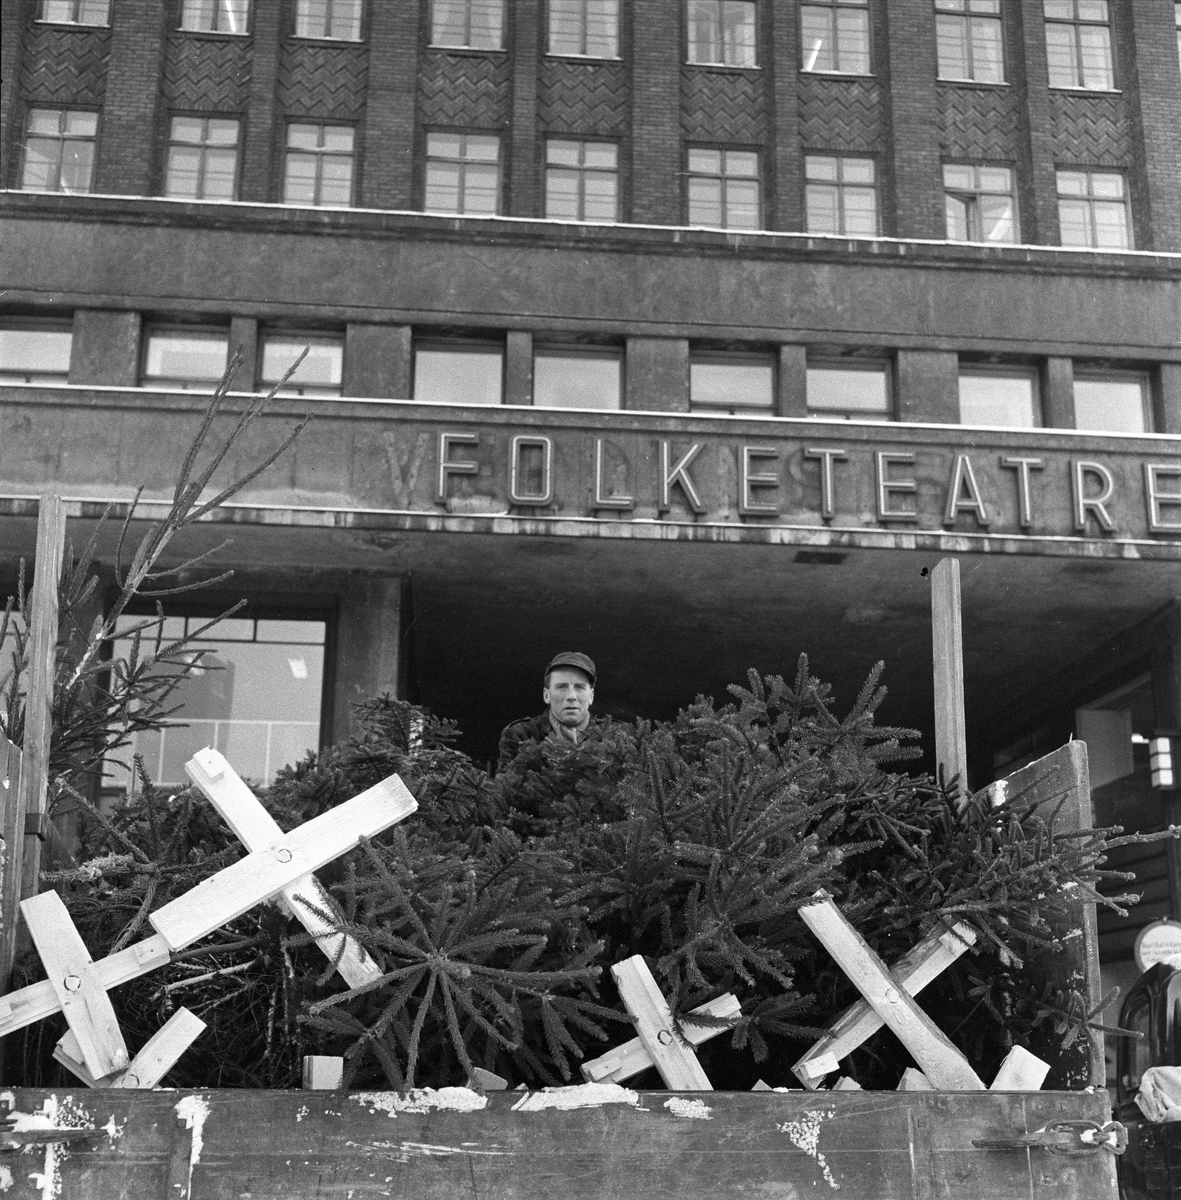 Juletresalg, Youngstorget, Folketeaterbygningen i bakgrunnen, lastebil og mann i forgrunnen, Oslo, 29.11.1956